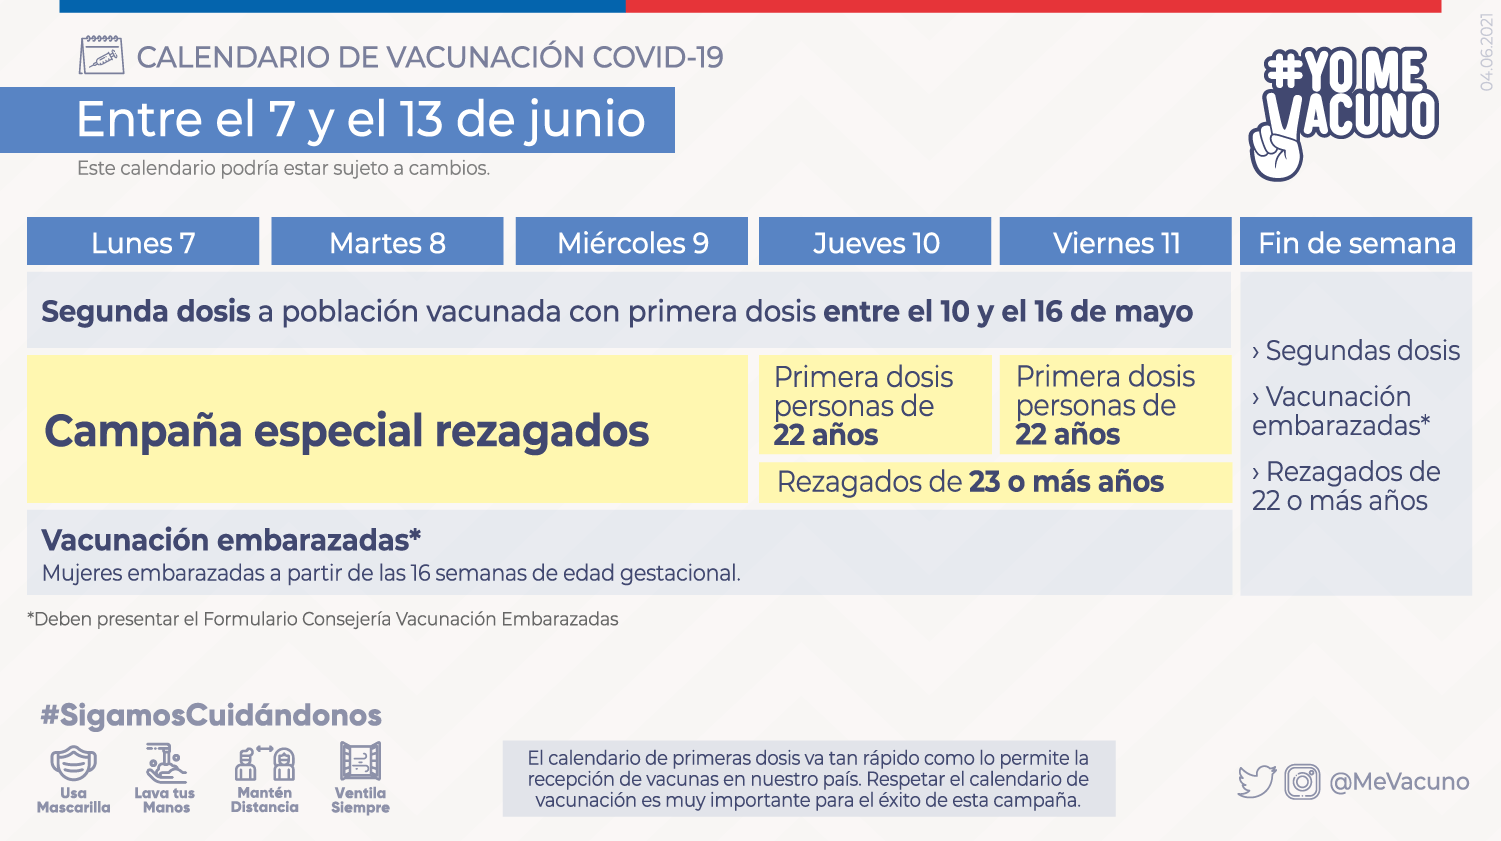 Calendario de vacunación 7 al 13 de junio